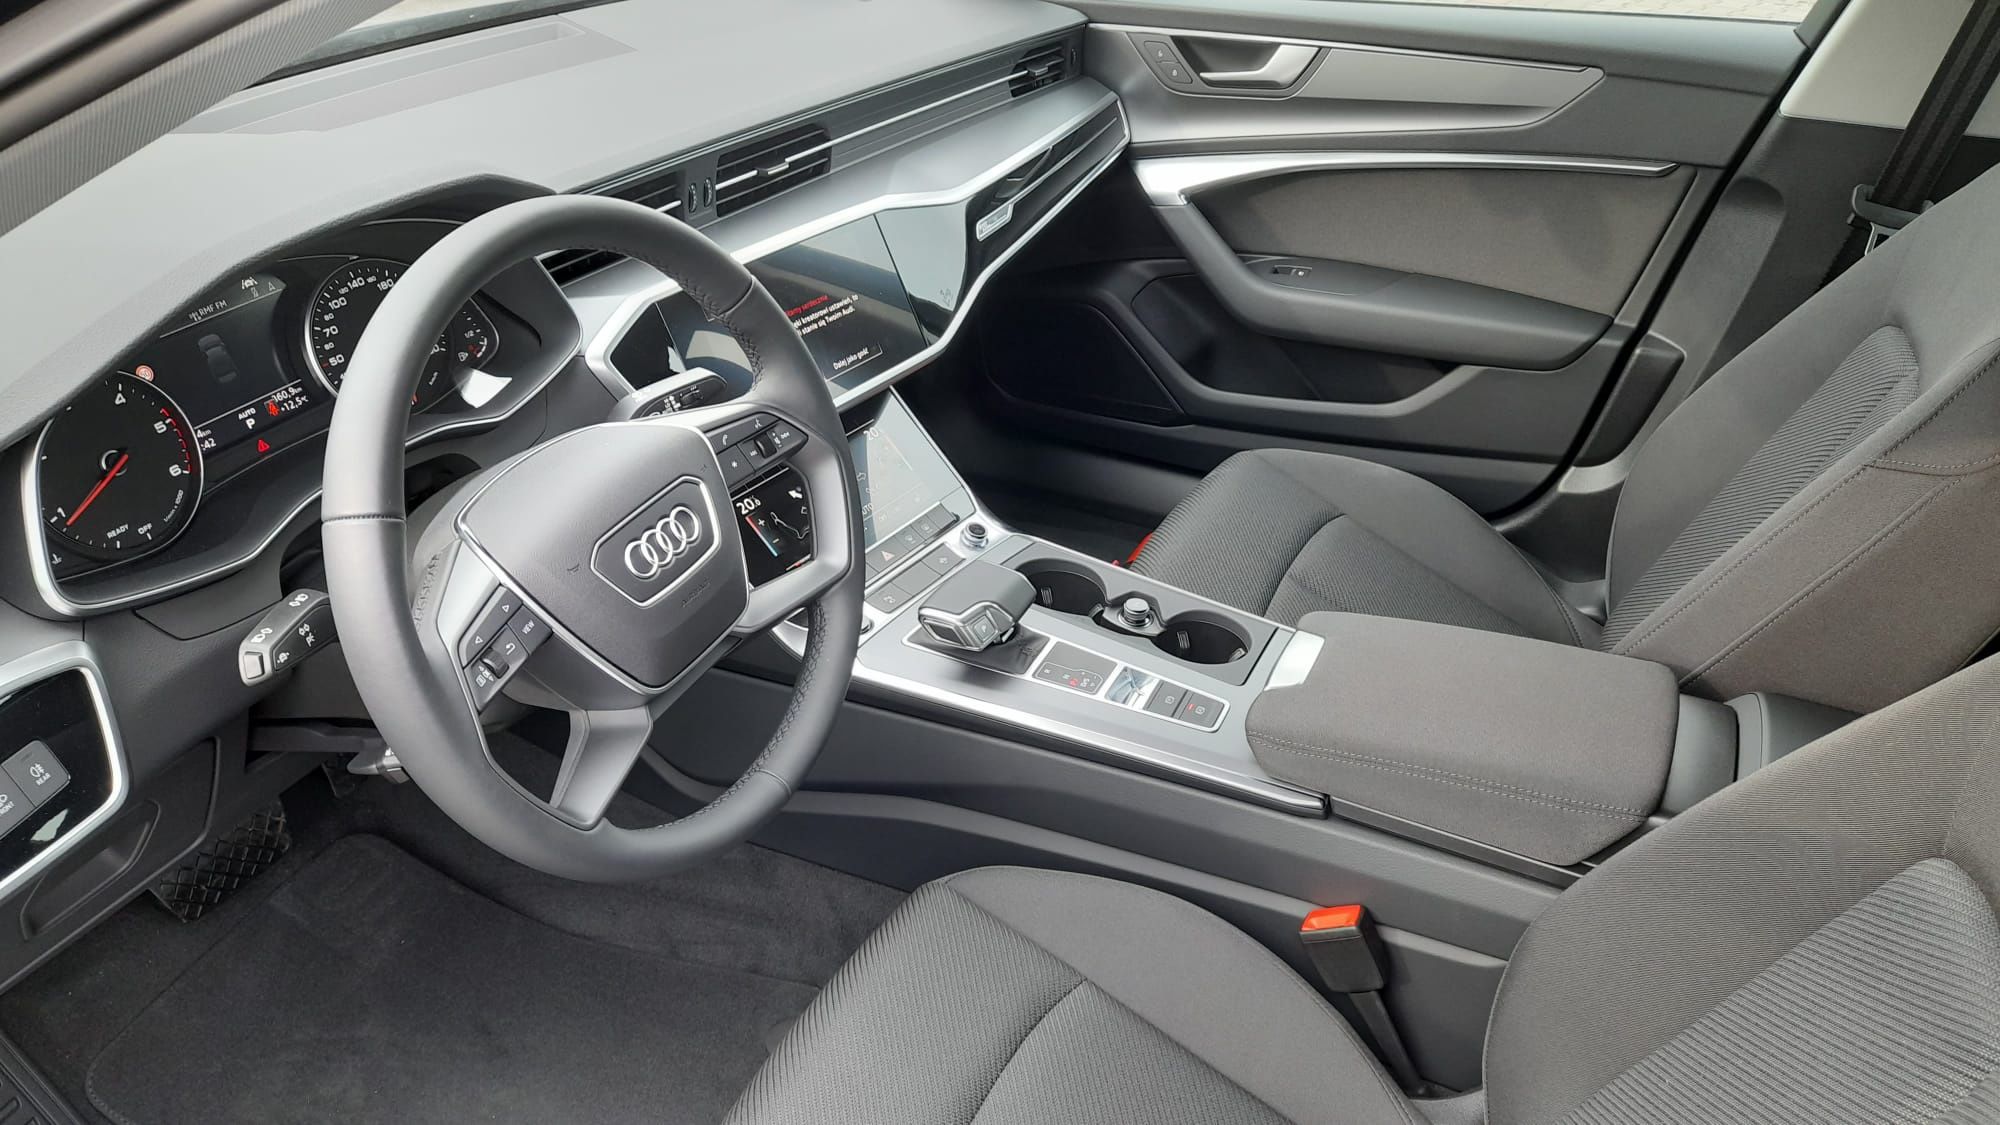 Audi A6 miesięczna rata najmu w kwocie 3 500 zł/m